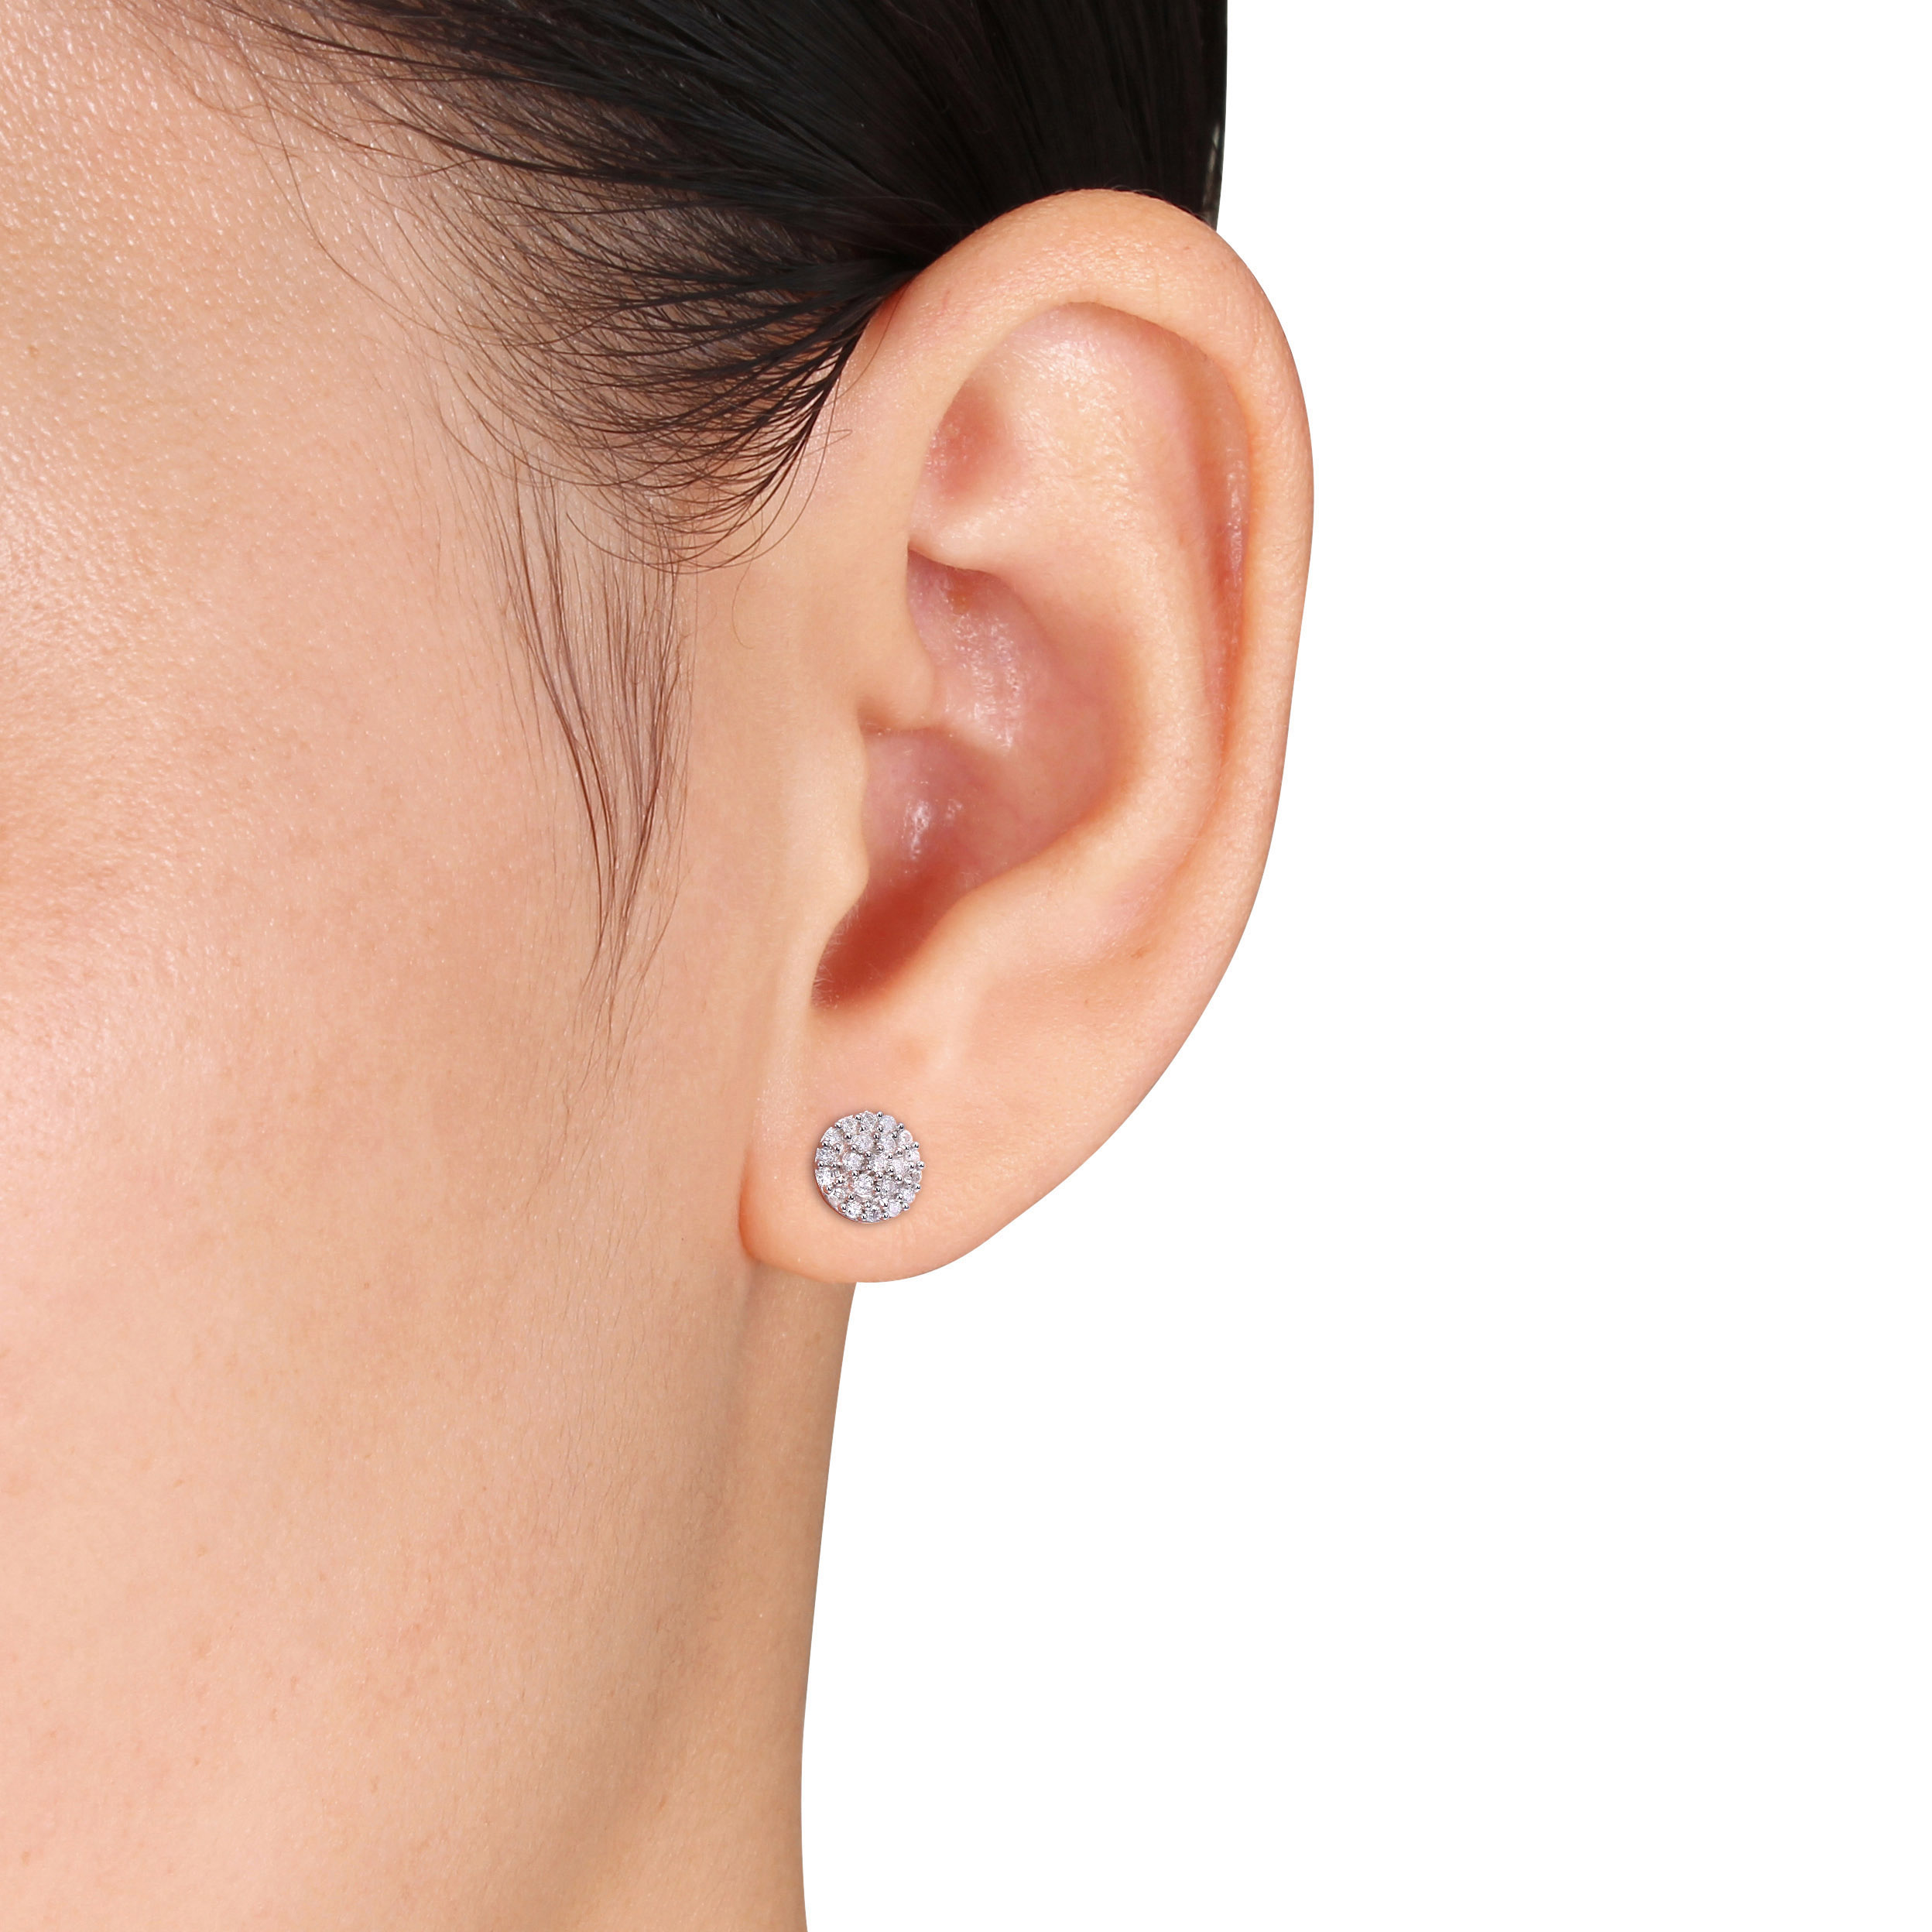 1/4 CT TW Diamond Halo Earrings in Sterling Silver